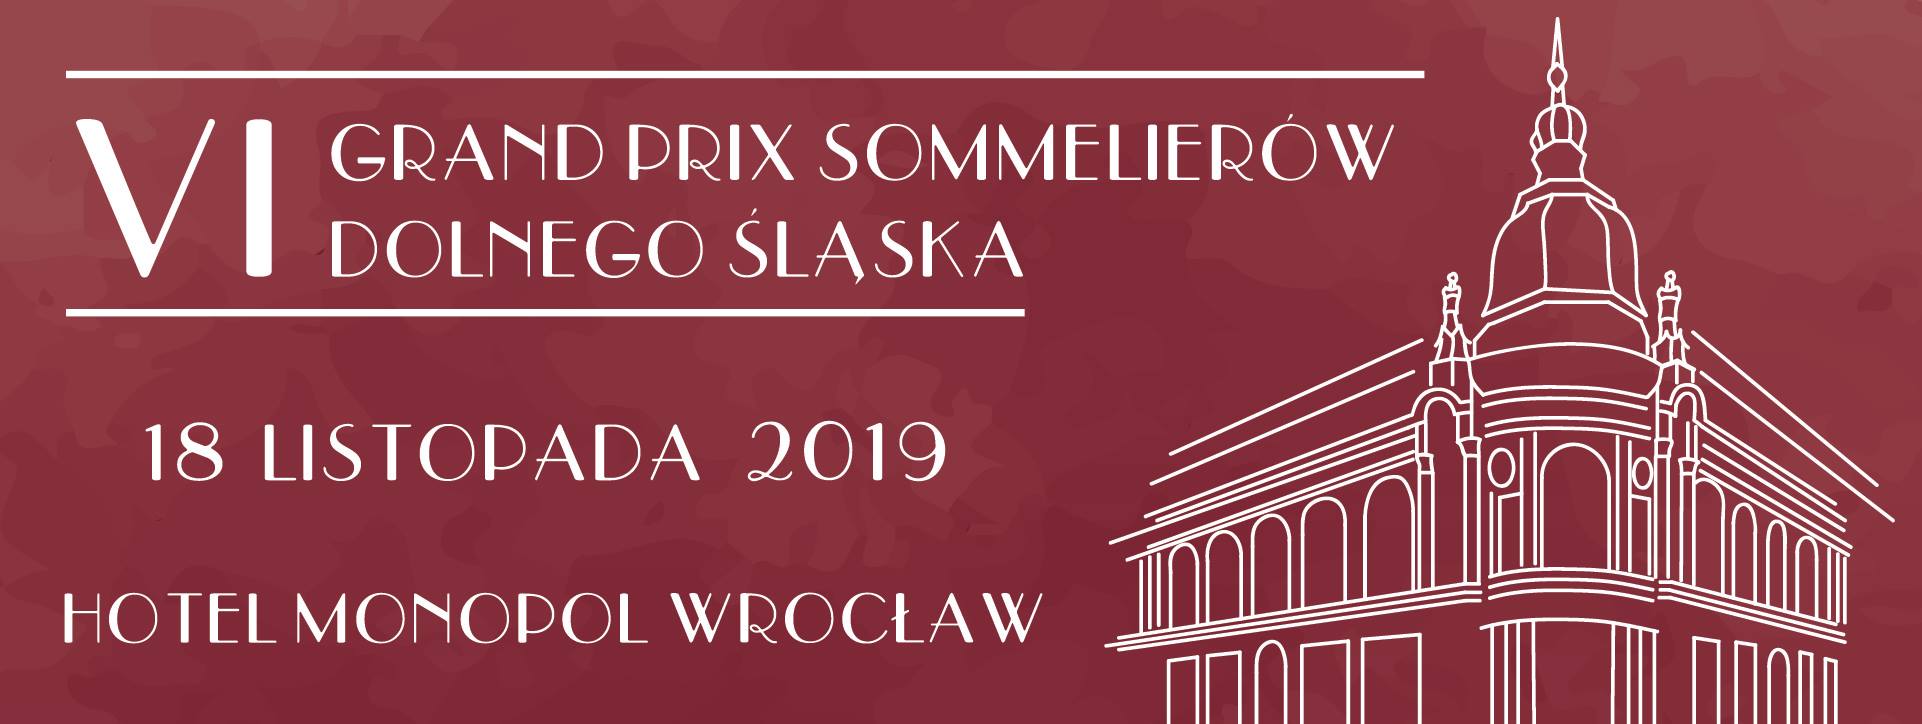 6. Grand Prix Sommelierów Dolnego Śląska